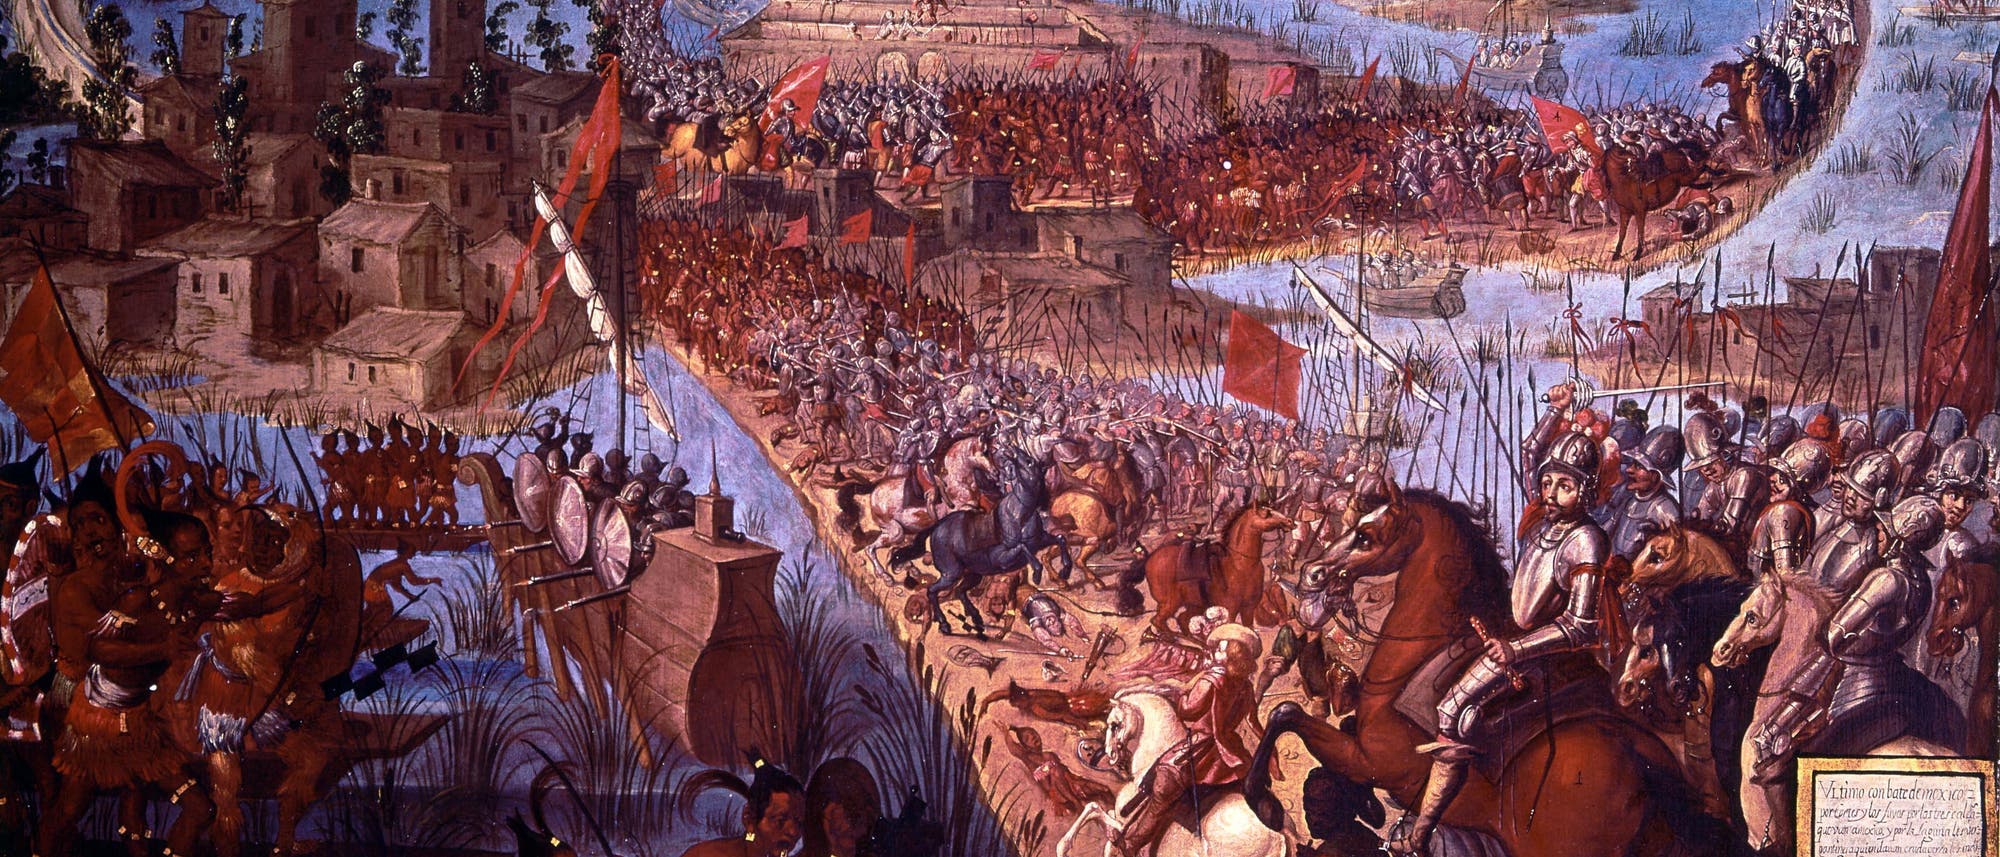 Gemälde der Eroberung Tenochtitlans.